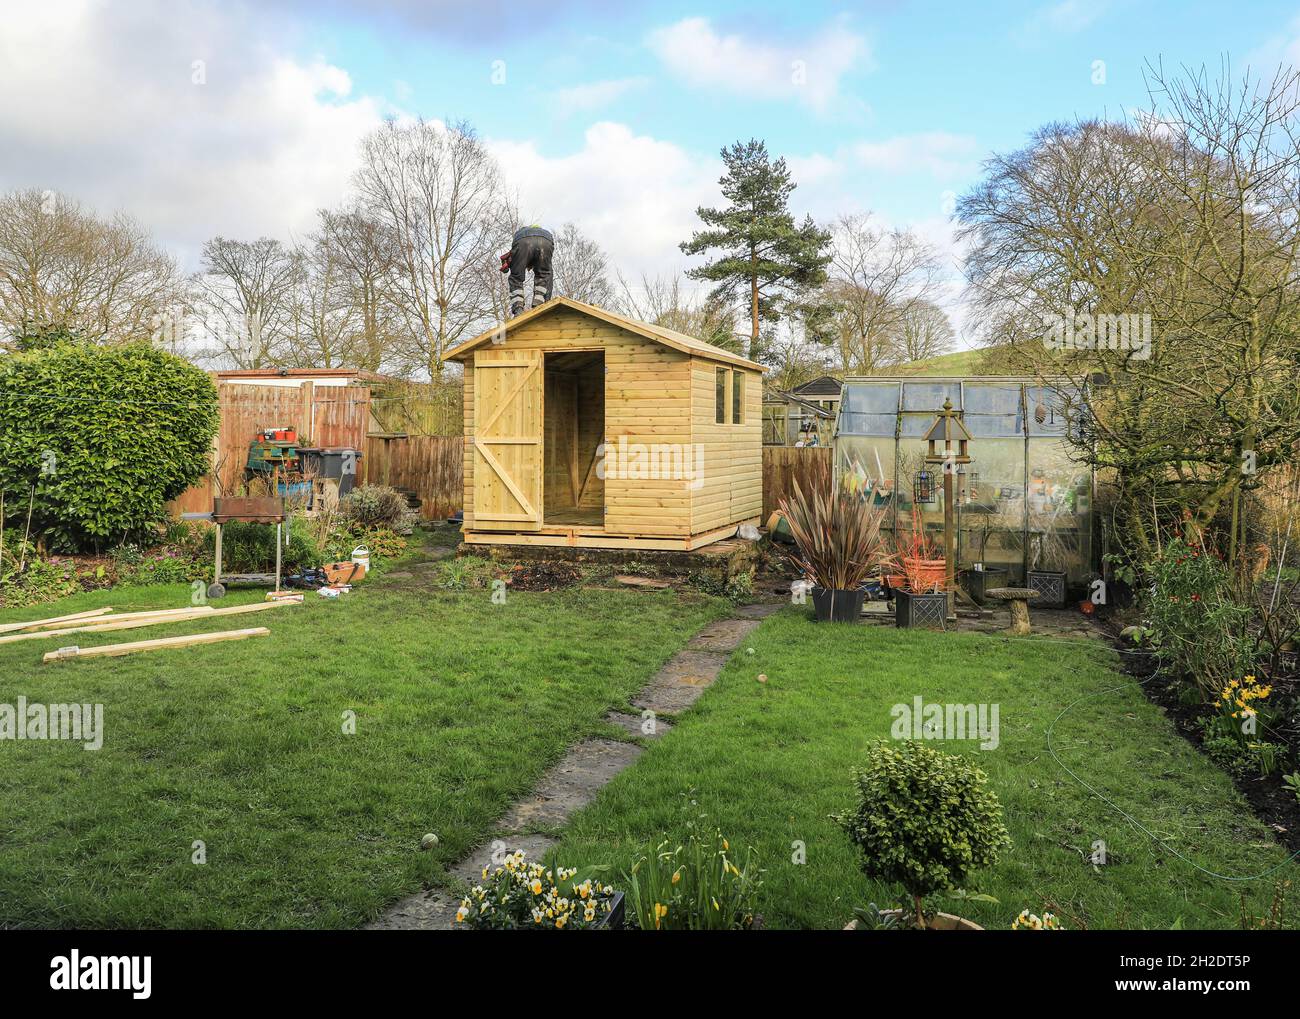 Arbeiter von Solid Sheds Ltd errichten einen Holzschuppen in einem Hausgarten, Stoke on Trent, Staffordshire, England, Großbritannien. Foto Nummer 7 in einer Serie von 8 Stockfoto